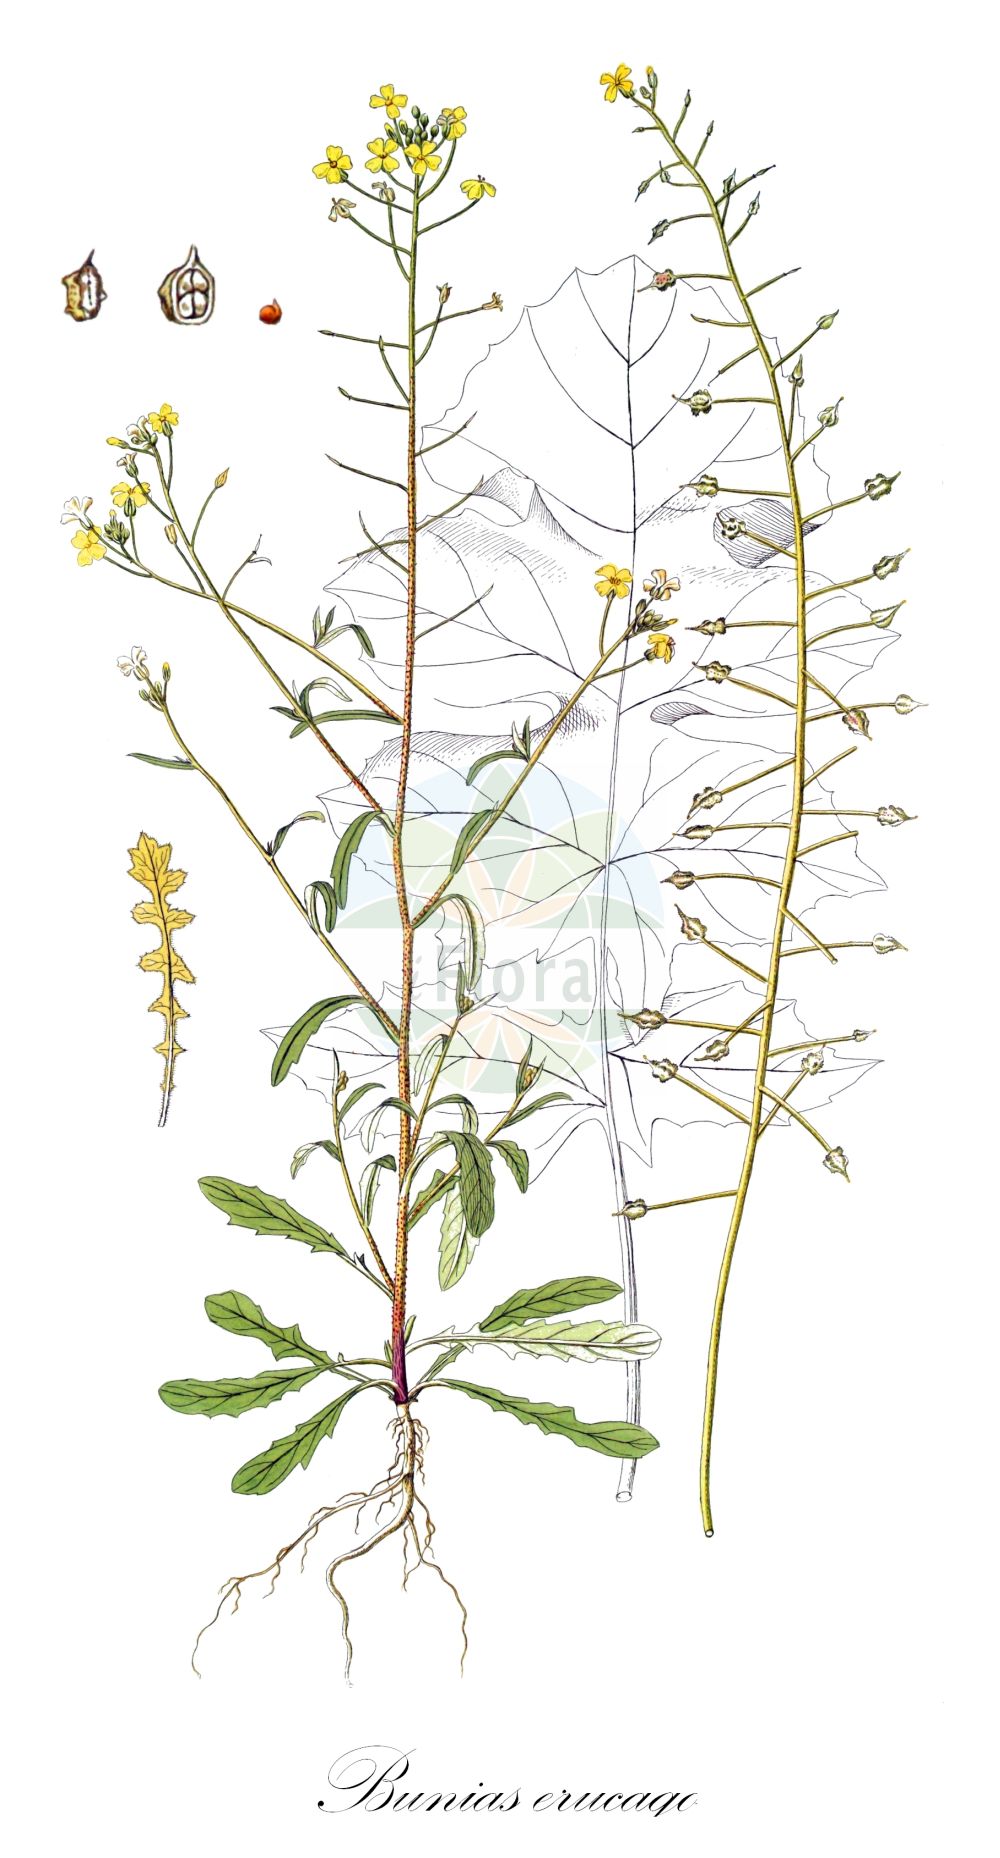 Historische Abbildung von Bunias erucago. Das Bild zeigt Blatt, Bluete, Frucht und Same. ---- Historical Drawing of Bunias erucago. The image is showing leaf, flower, fruit and seed.(Bunias erucago,Bunias arvensis,Bunias aspera,Bunias brachyptera,Bunias erucago,Bunias macroptera,Bunias tricornis,Bunias,Zackenschötchen,Warty-cabbage,Brassicaceae,Kreuzblütler,Cabbage family,Blatt,Bluete,Frucht,Same,leaf,flower,fruit,seed)